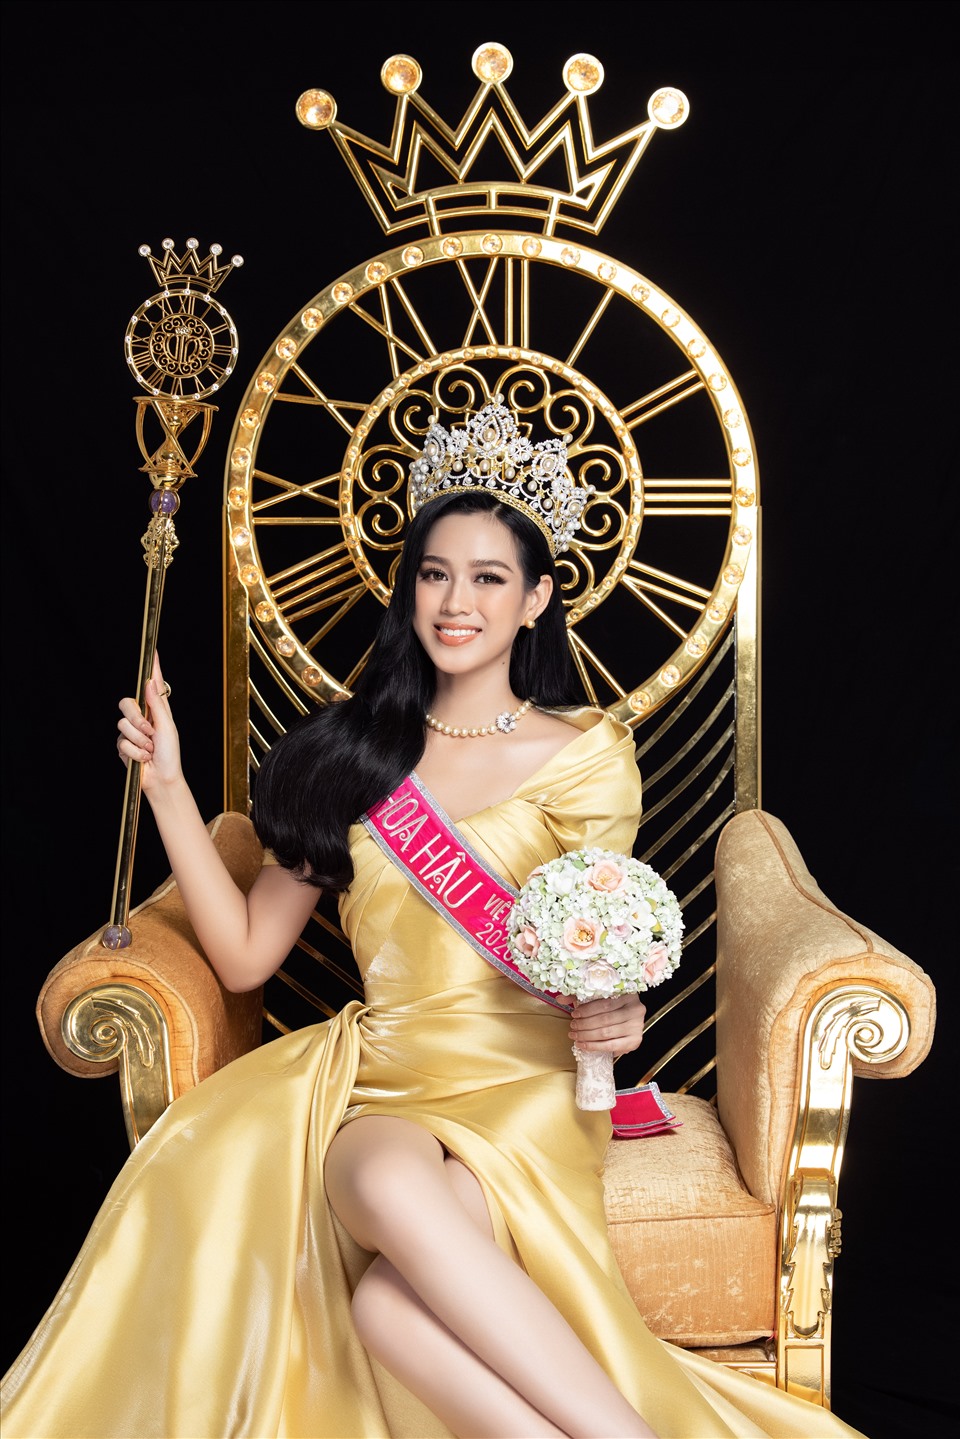 Đỗ Thị Hà (2001) đạt danh hiệu Hoa hậu Việt Nam 2020.